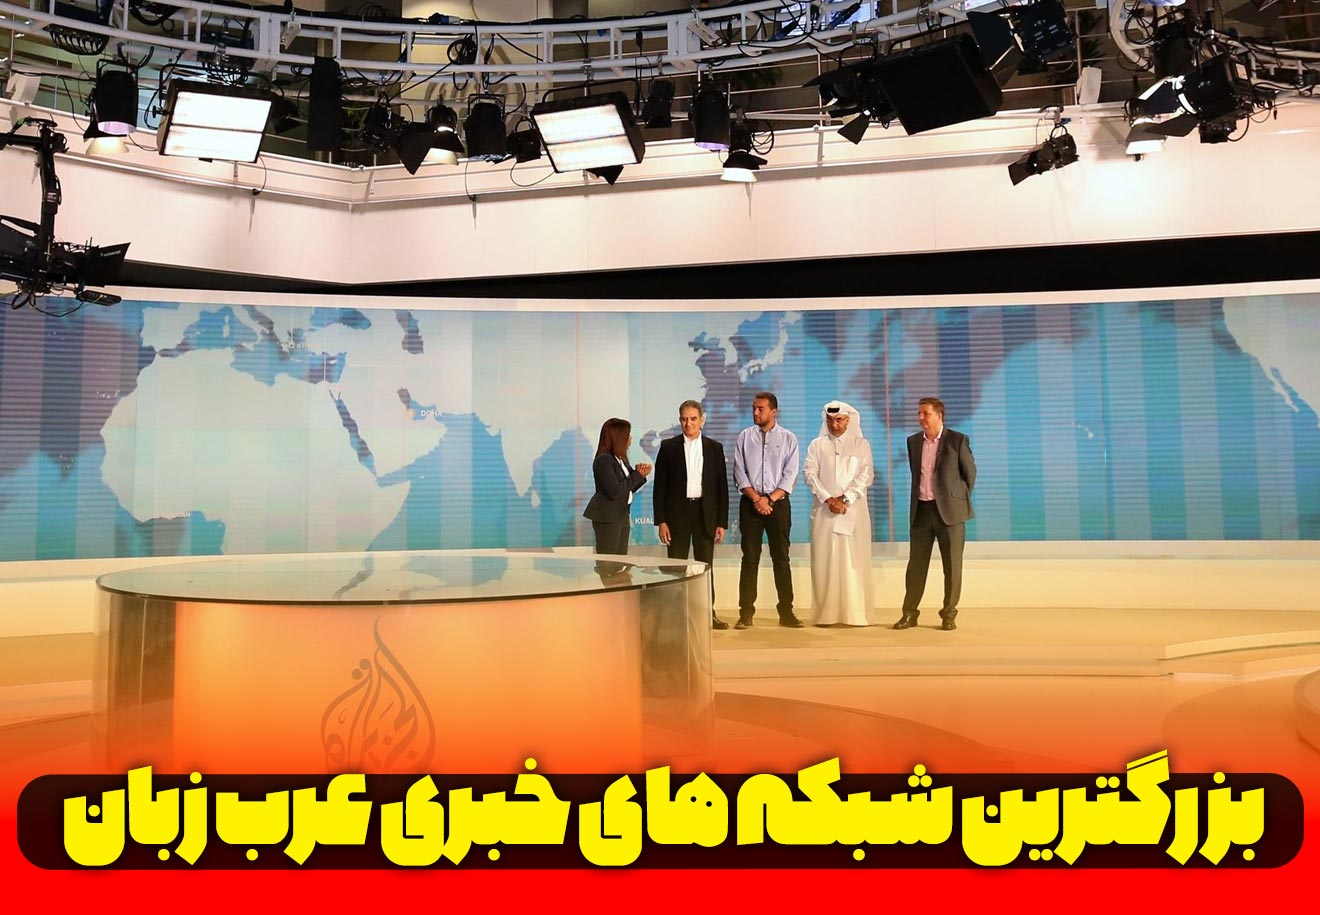 شبکه خبری عربی